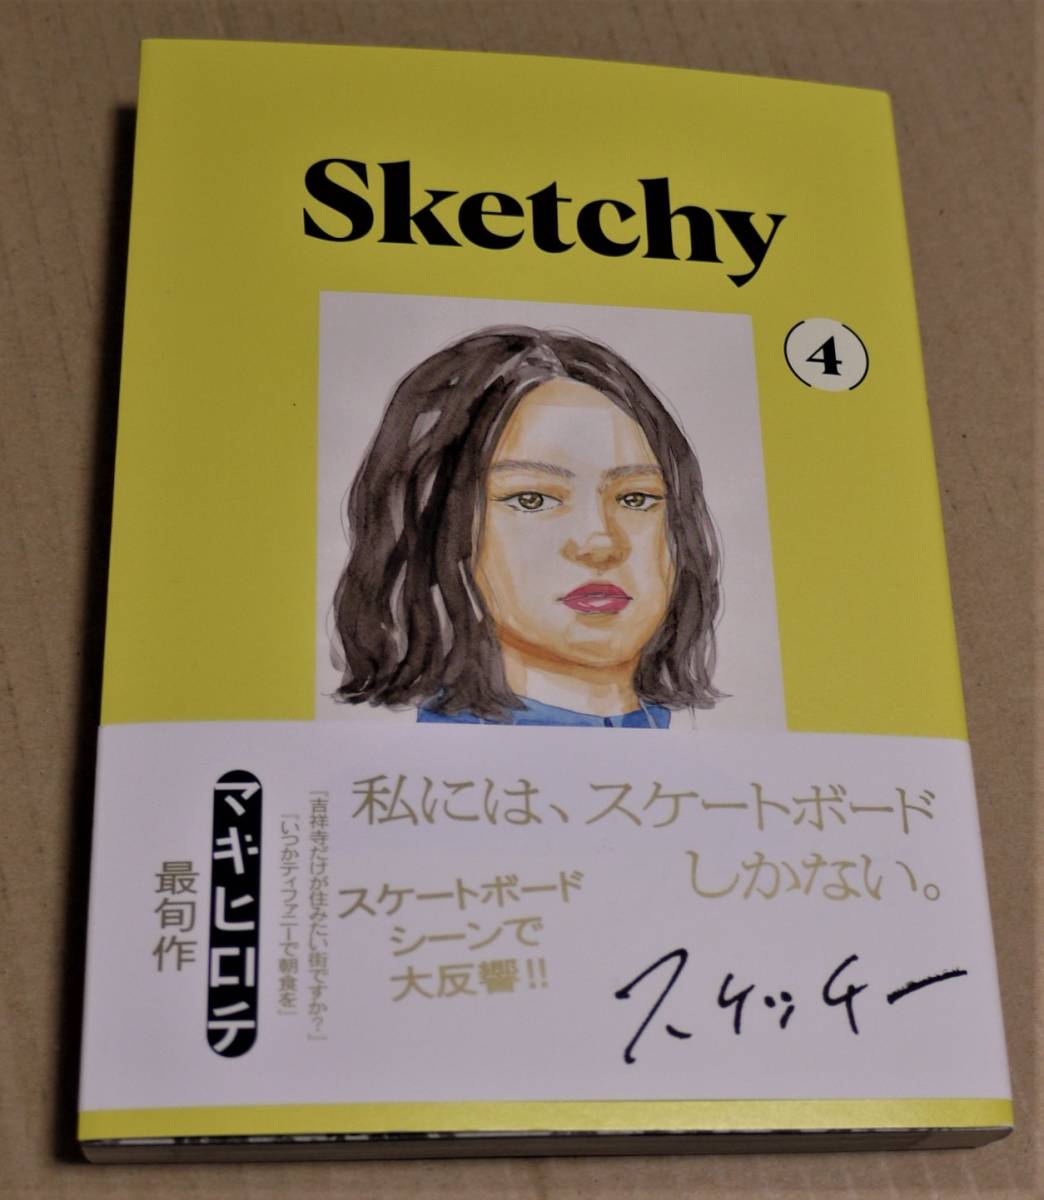 رسم توضيحي مرسومة باليد وتوقيع Sketchy Volume 4 (Makihirochi) يتضمن الشحن Clickpost, كاريكاتير, سلع الانمي, لافتة, اللوحة المرسومة باليد